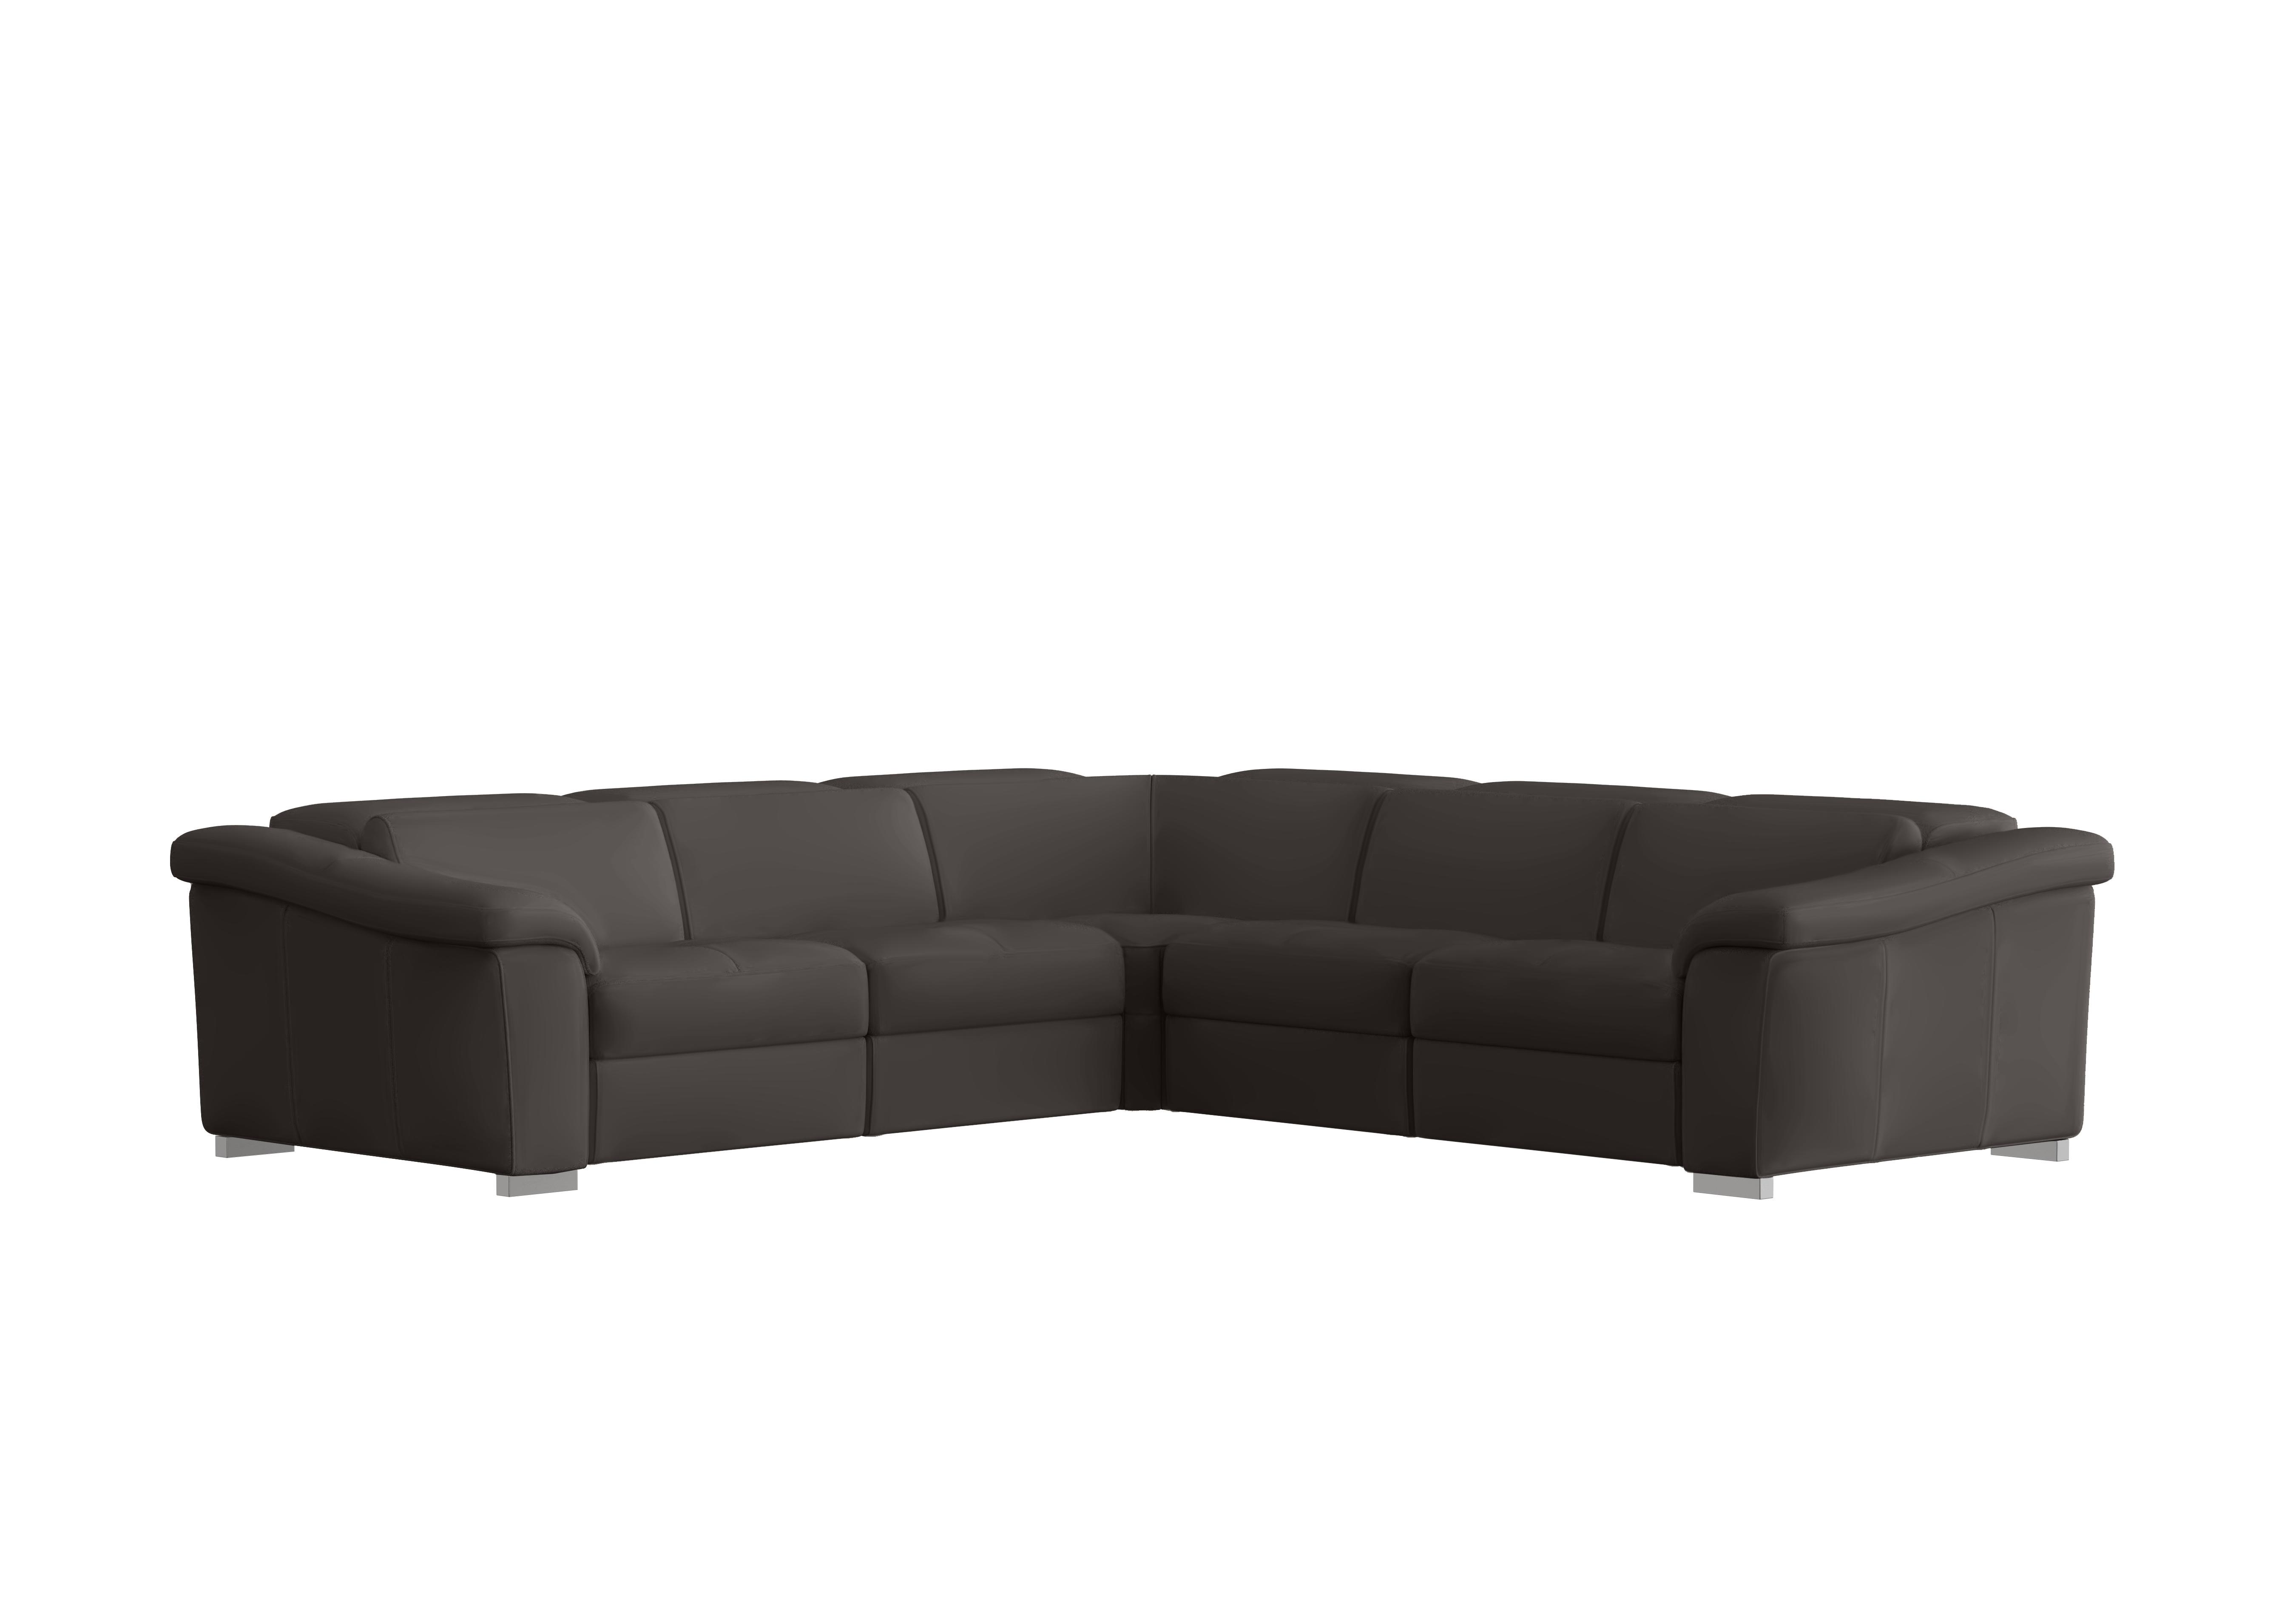 Galileo Leather Large Corner Sofa in Torello Grigio Scuro 327 Ch on Furniture Village